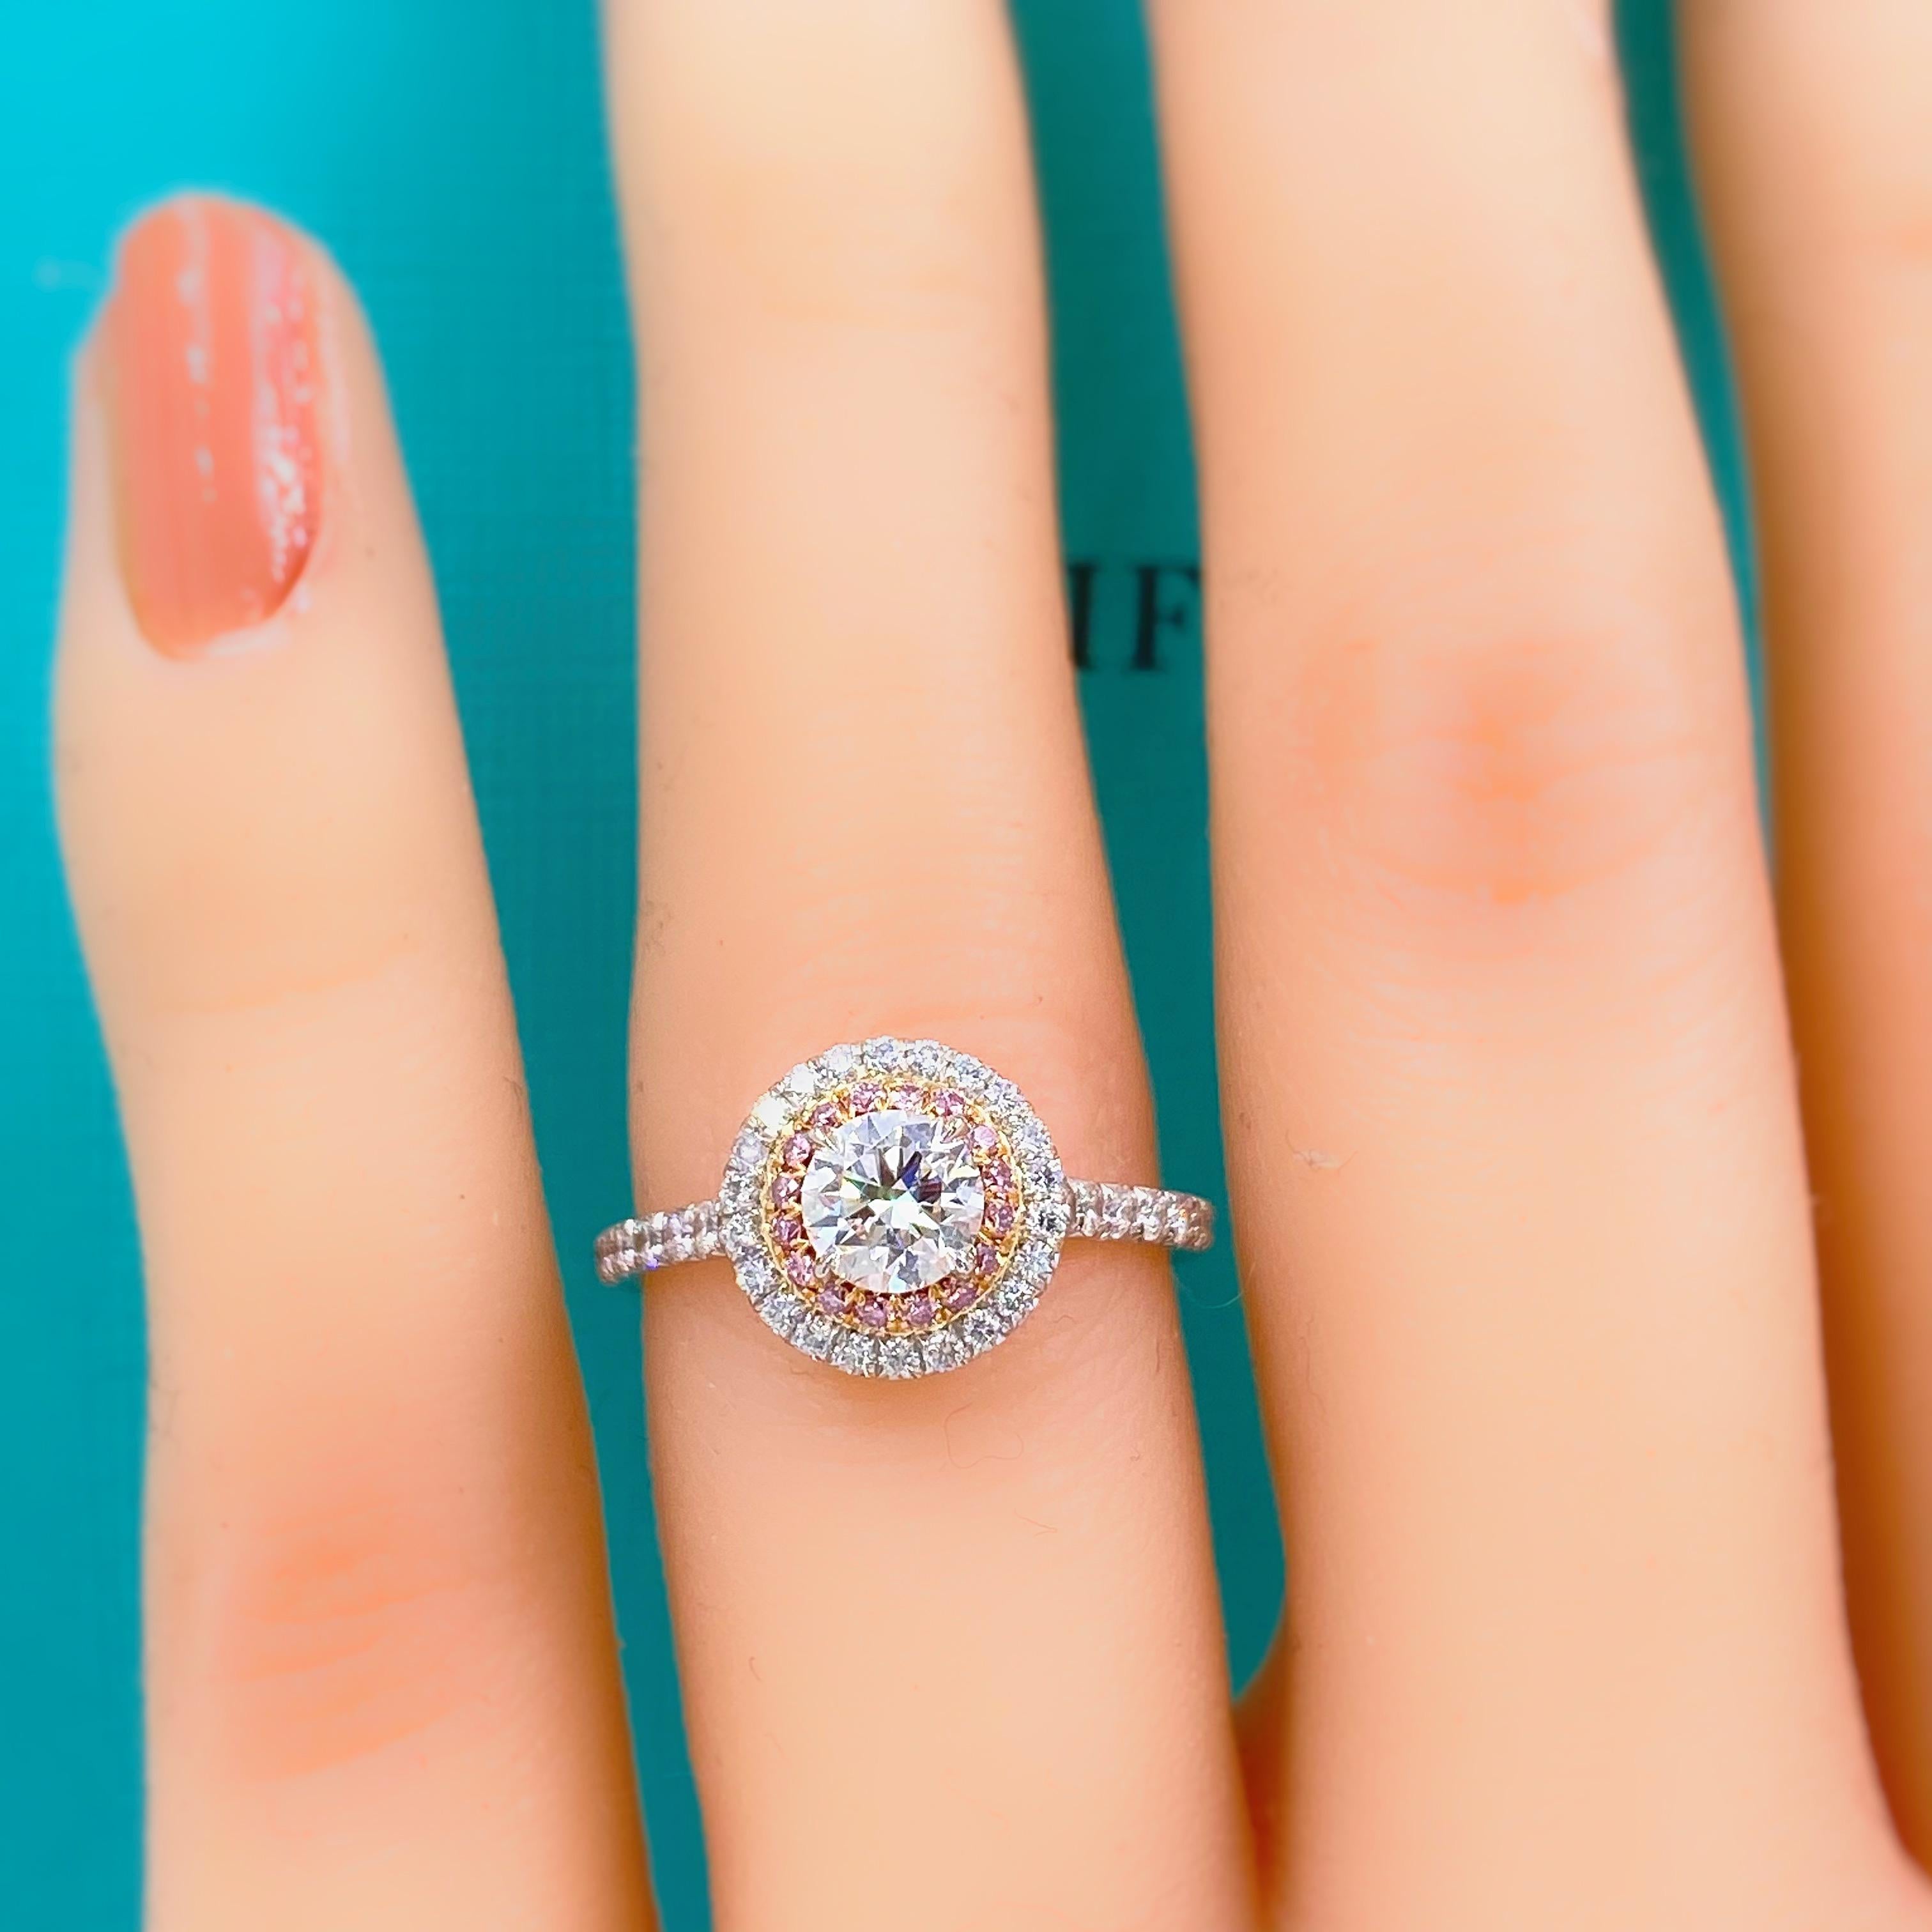 tiffany soleste round brilliant engagement ring in platinum